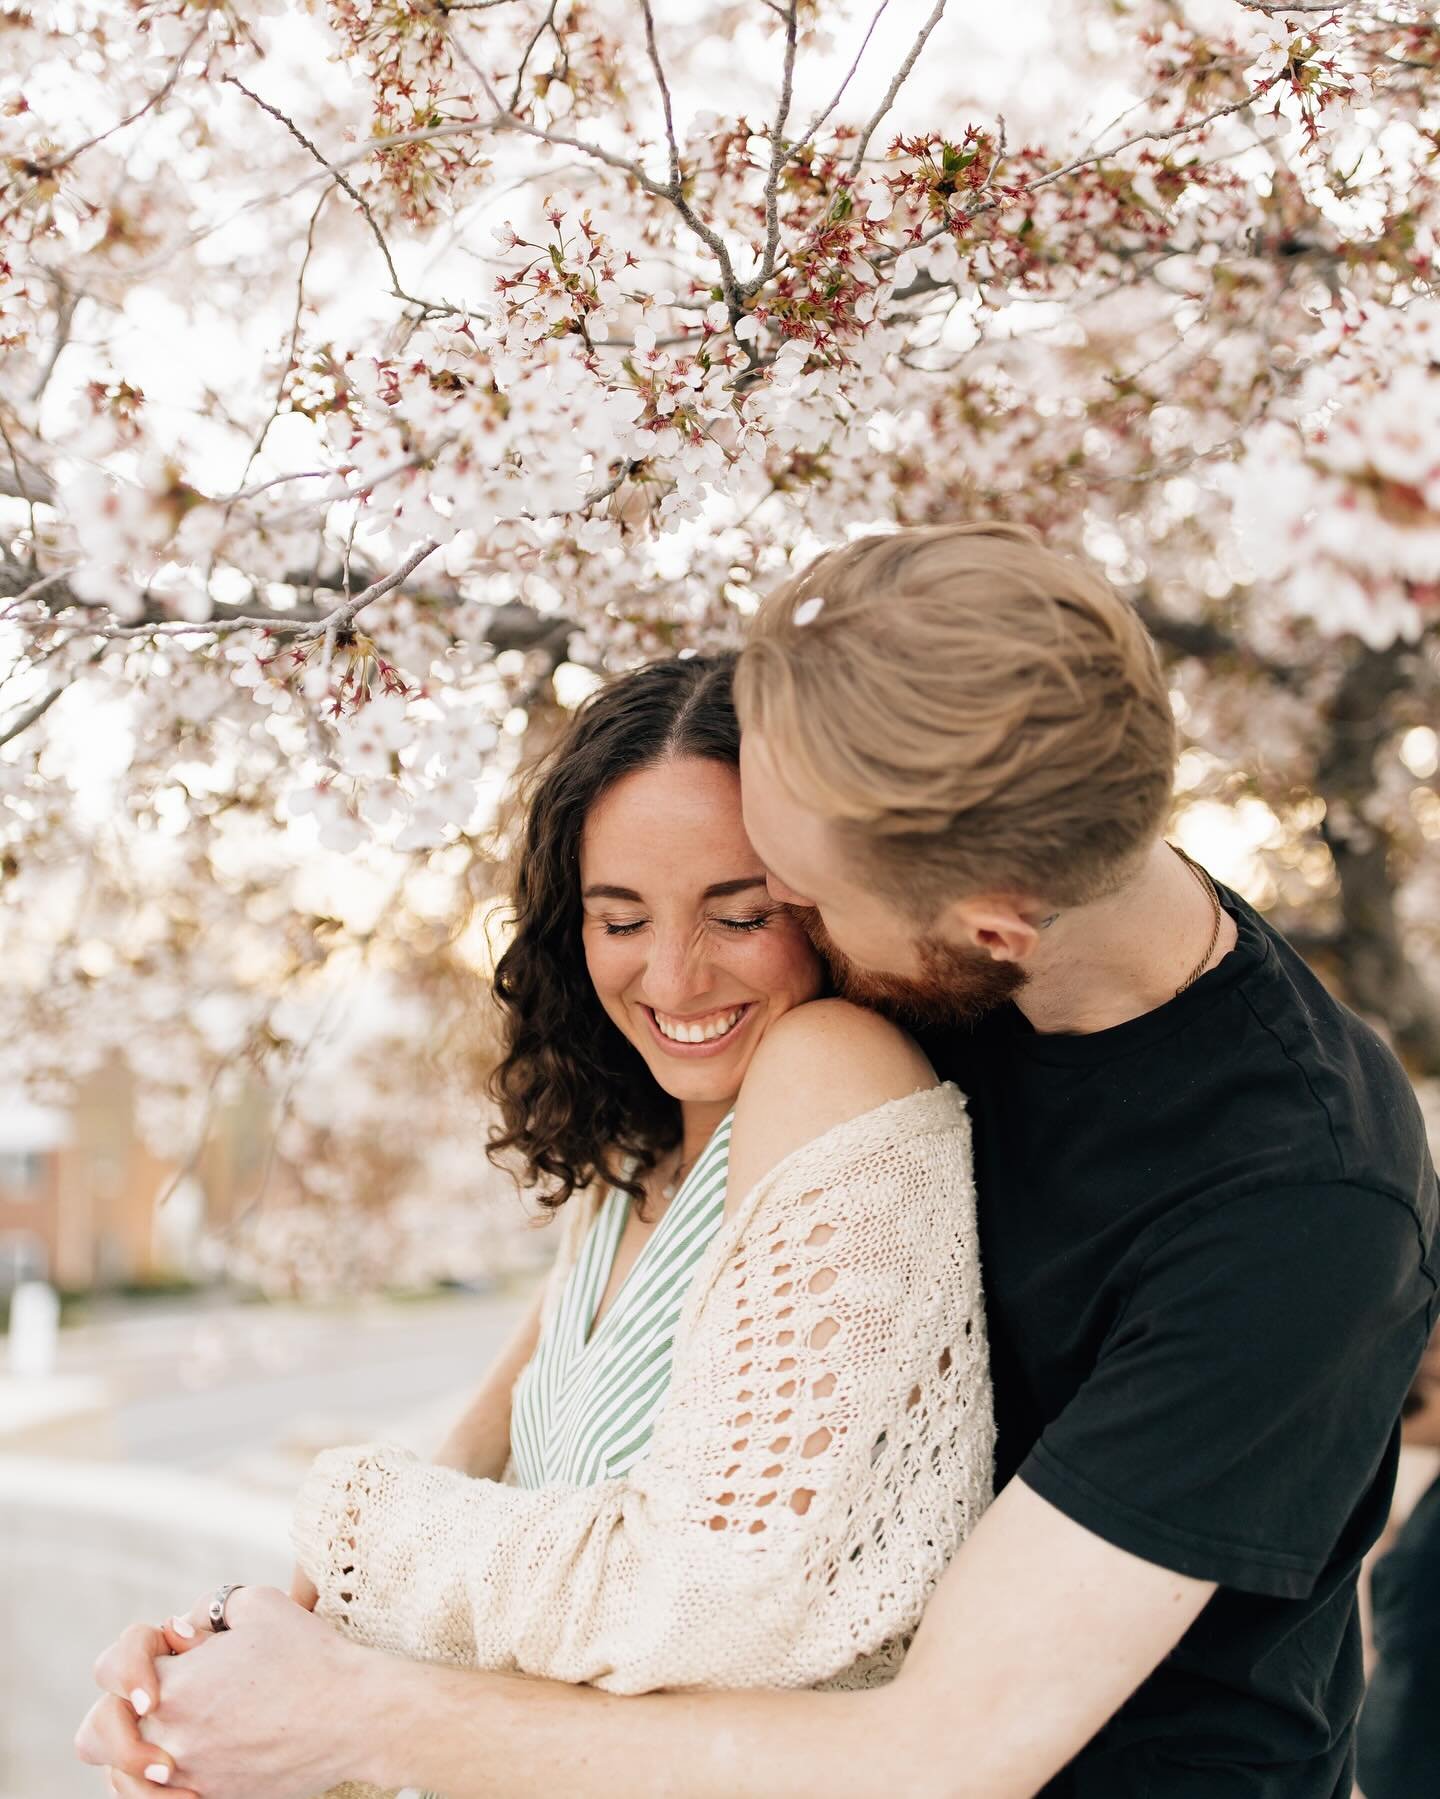 Spring has sprung 🌸🌷🌼

#utahspring #utahphotography #couplesphotography #couplesphotographer #springphotography #blossoms #utahcouplesphotographer